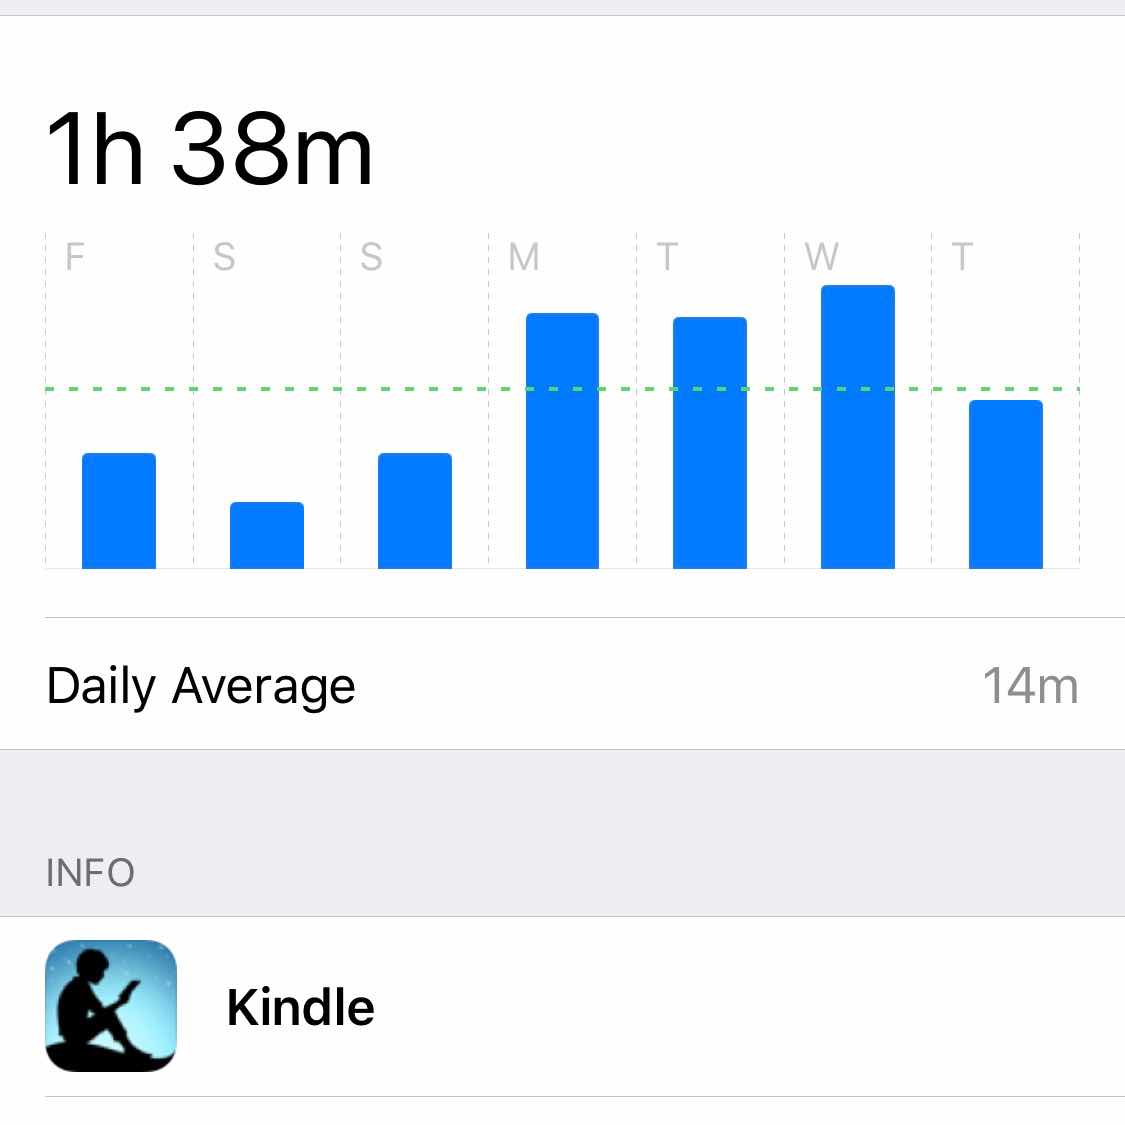 Weekly Kindle Usage